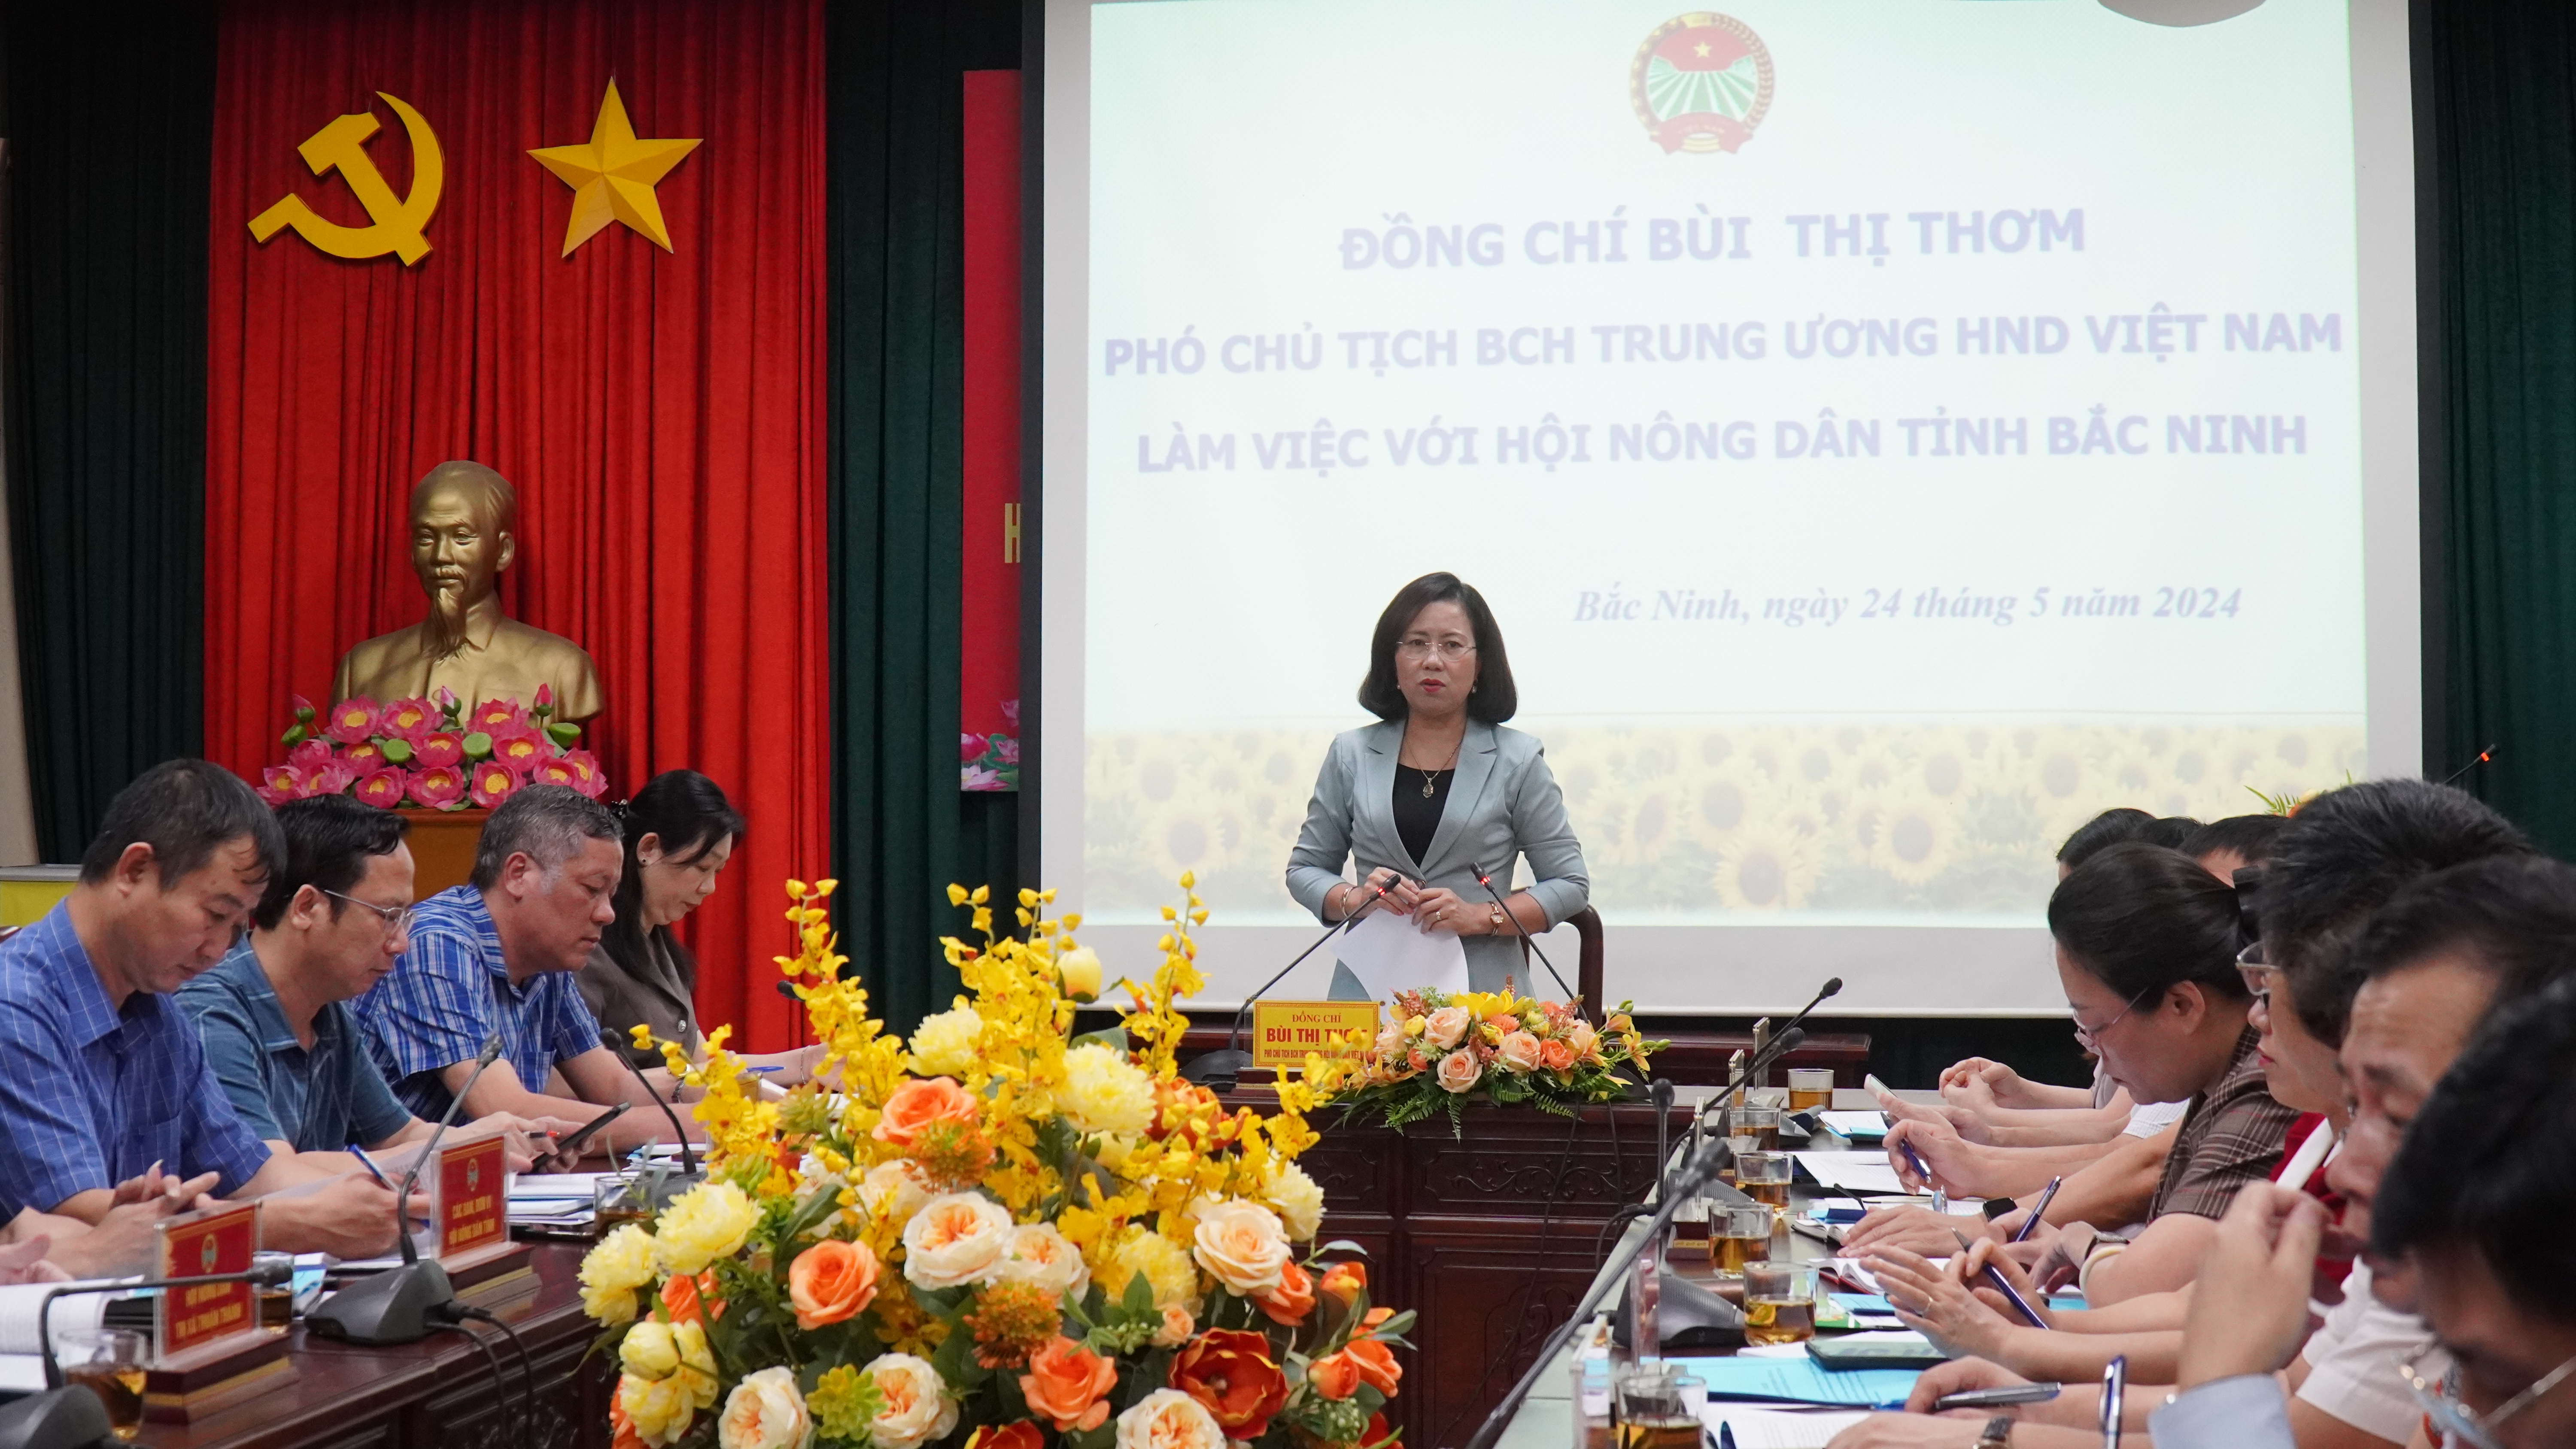 Phó Chủ tịch BCH T.Ư Hội Nông dân Việt Nam Bùi Thị Thơm làm việc với Hội Nông dân tỉnh Bắc Ninh- Ảnh 1.